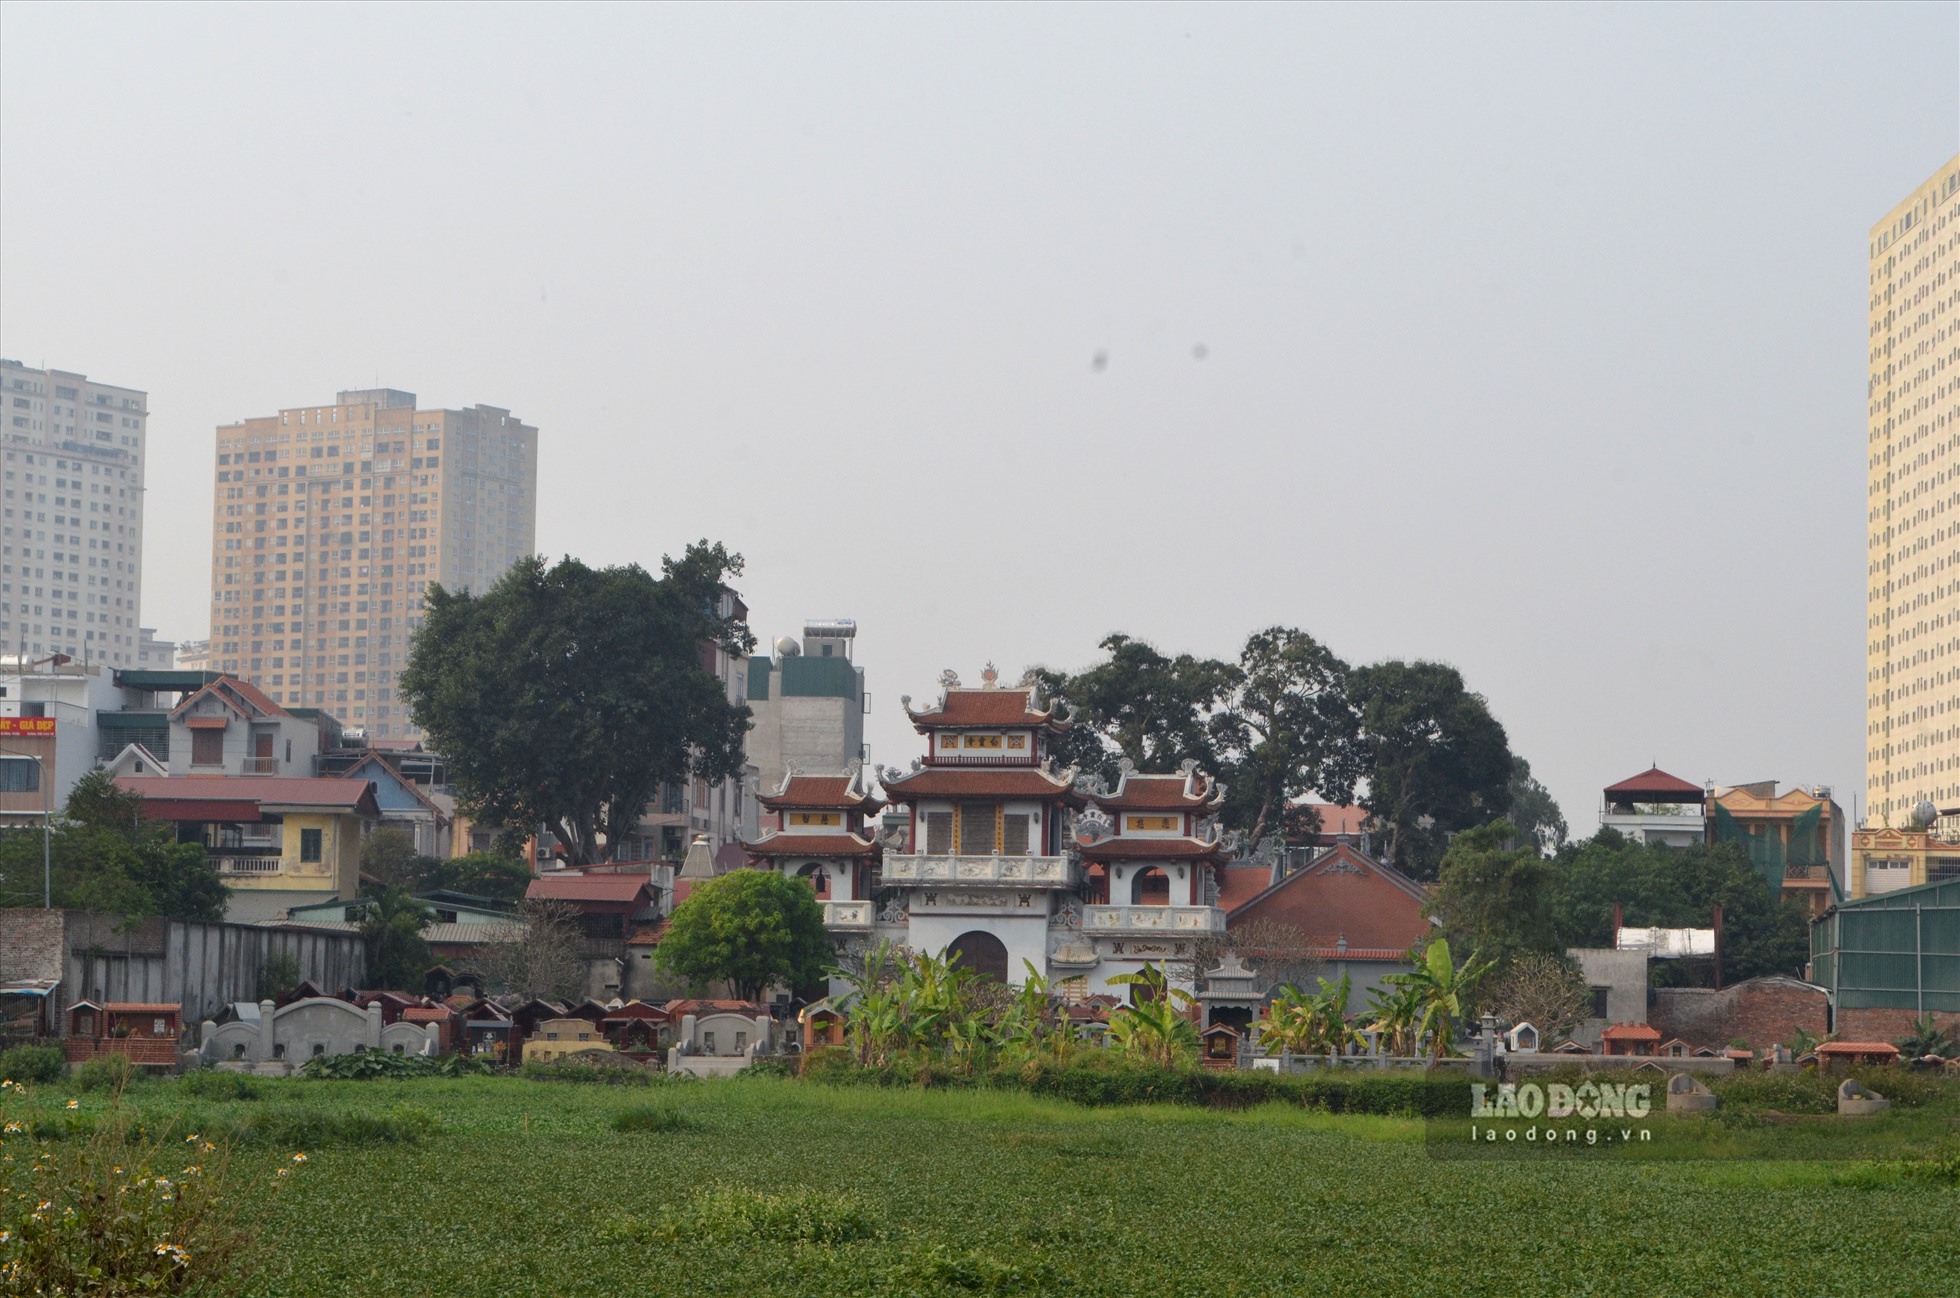 Cũng giống nhiều làng quê Bắc Bộ, khu vực cuối xóm Đại Khang (xã Hữu Hòa), băng qua cánh đồng lúa là khu nghĩa trang. Phía sau là các tòa chung cư cao tầng.